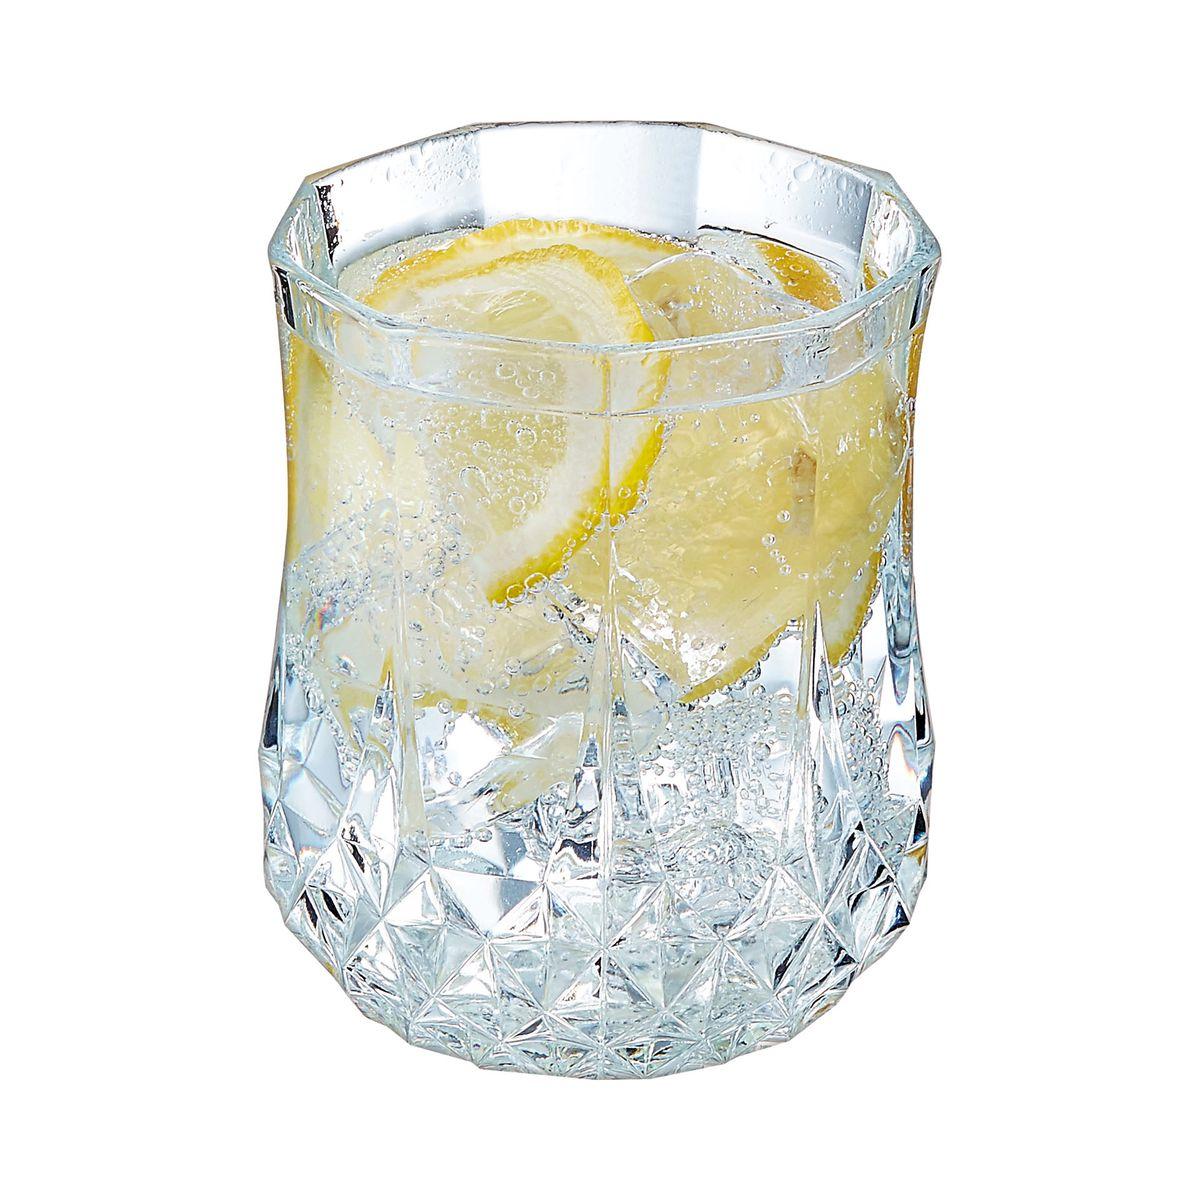 6 verres à eau vintage 23cl Longchamp - Cristal d'Arques - Verre ultra transparent au design vintage